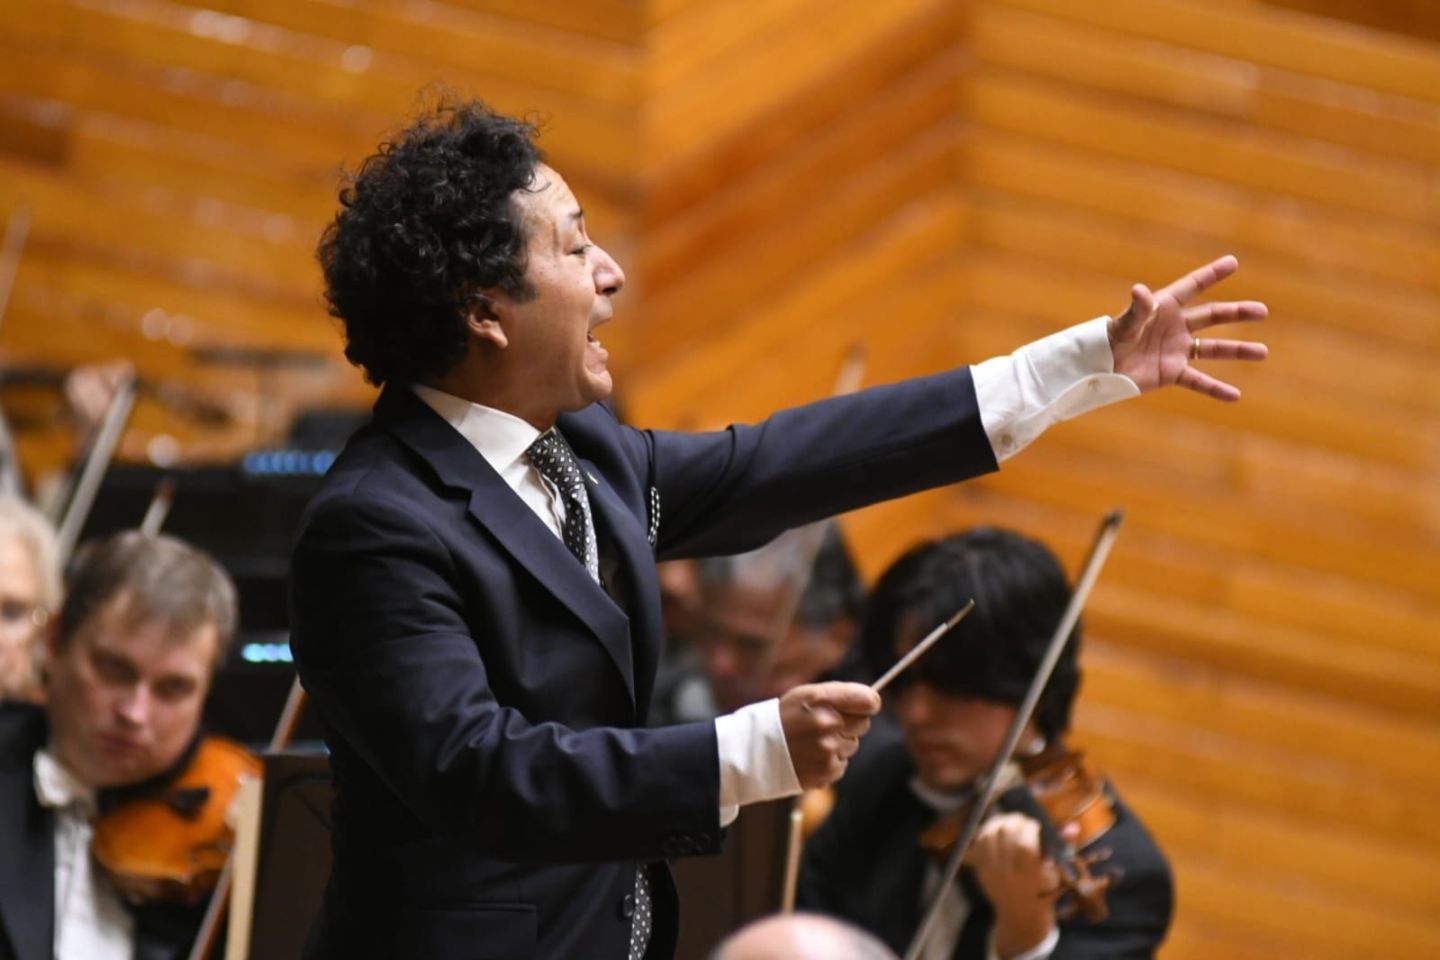 La Orquesta Sinfónica del Estado de México Deleita a su
Público de Toluca con Música de Mozart y Rimsky-Korrsakov